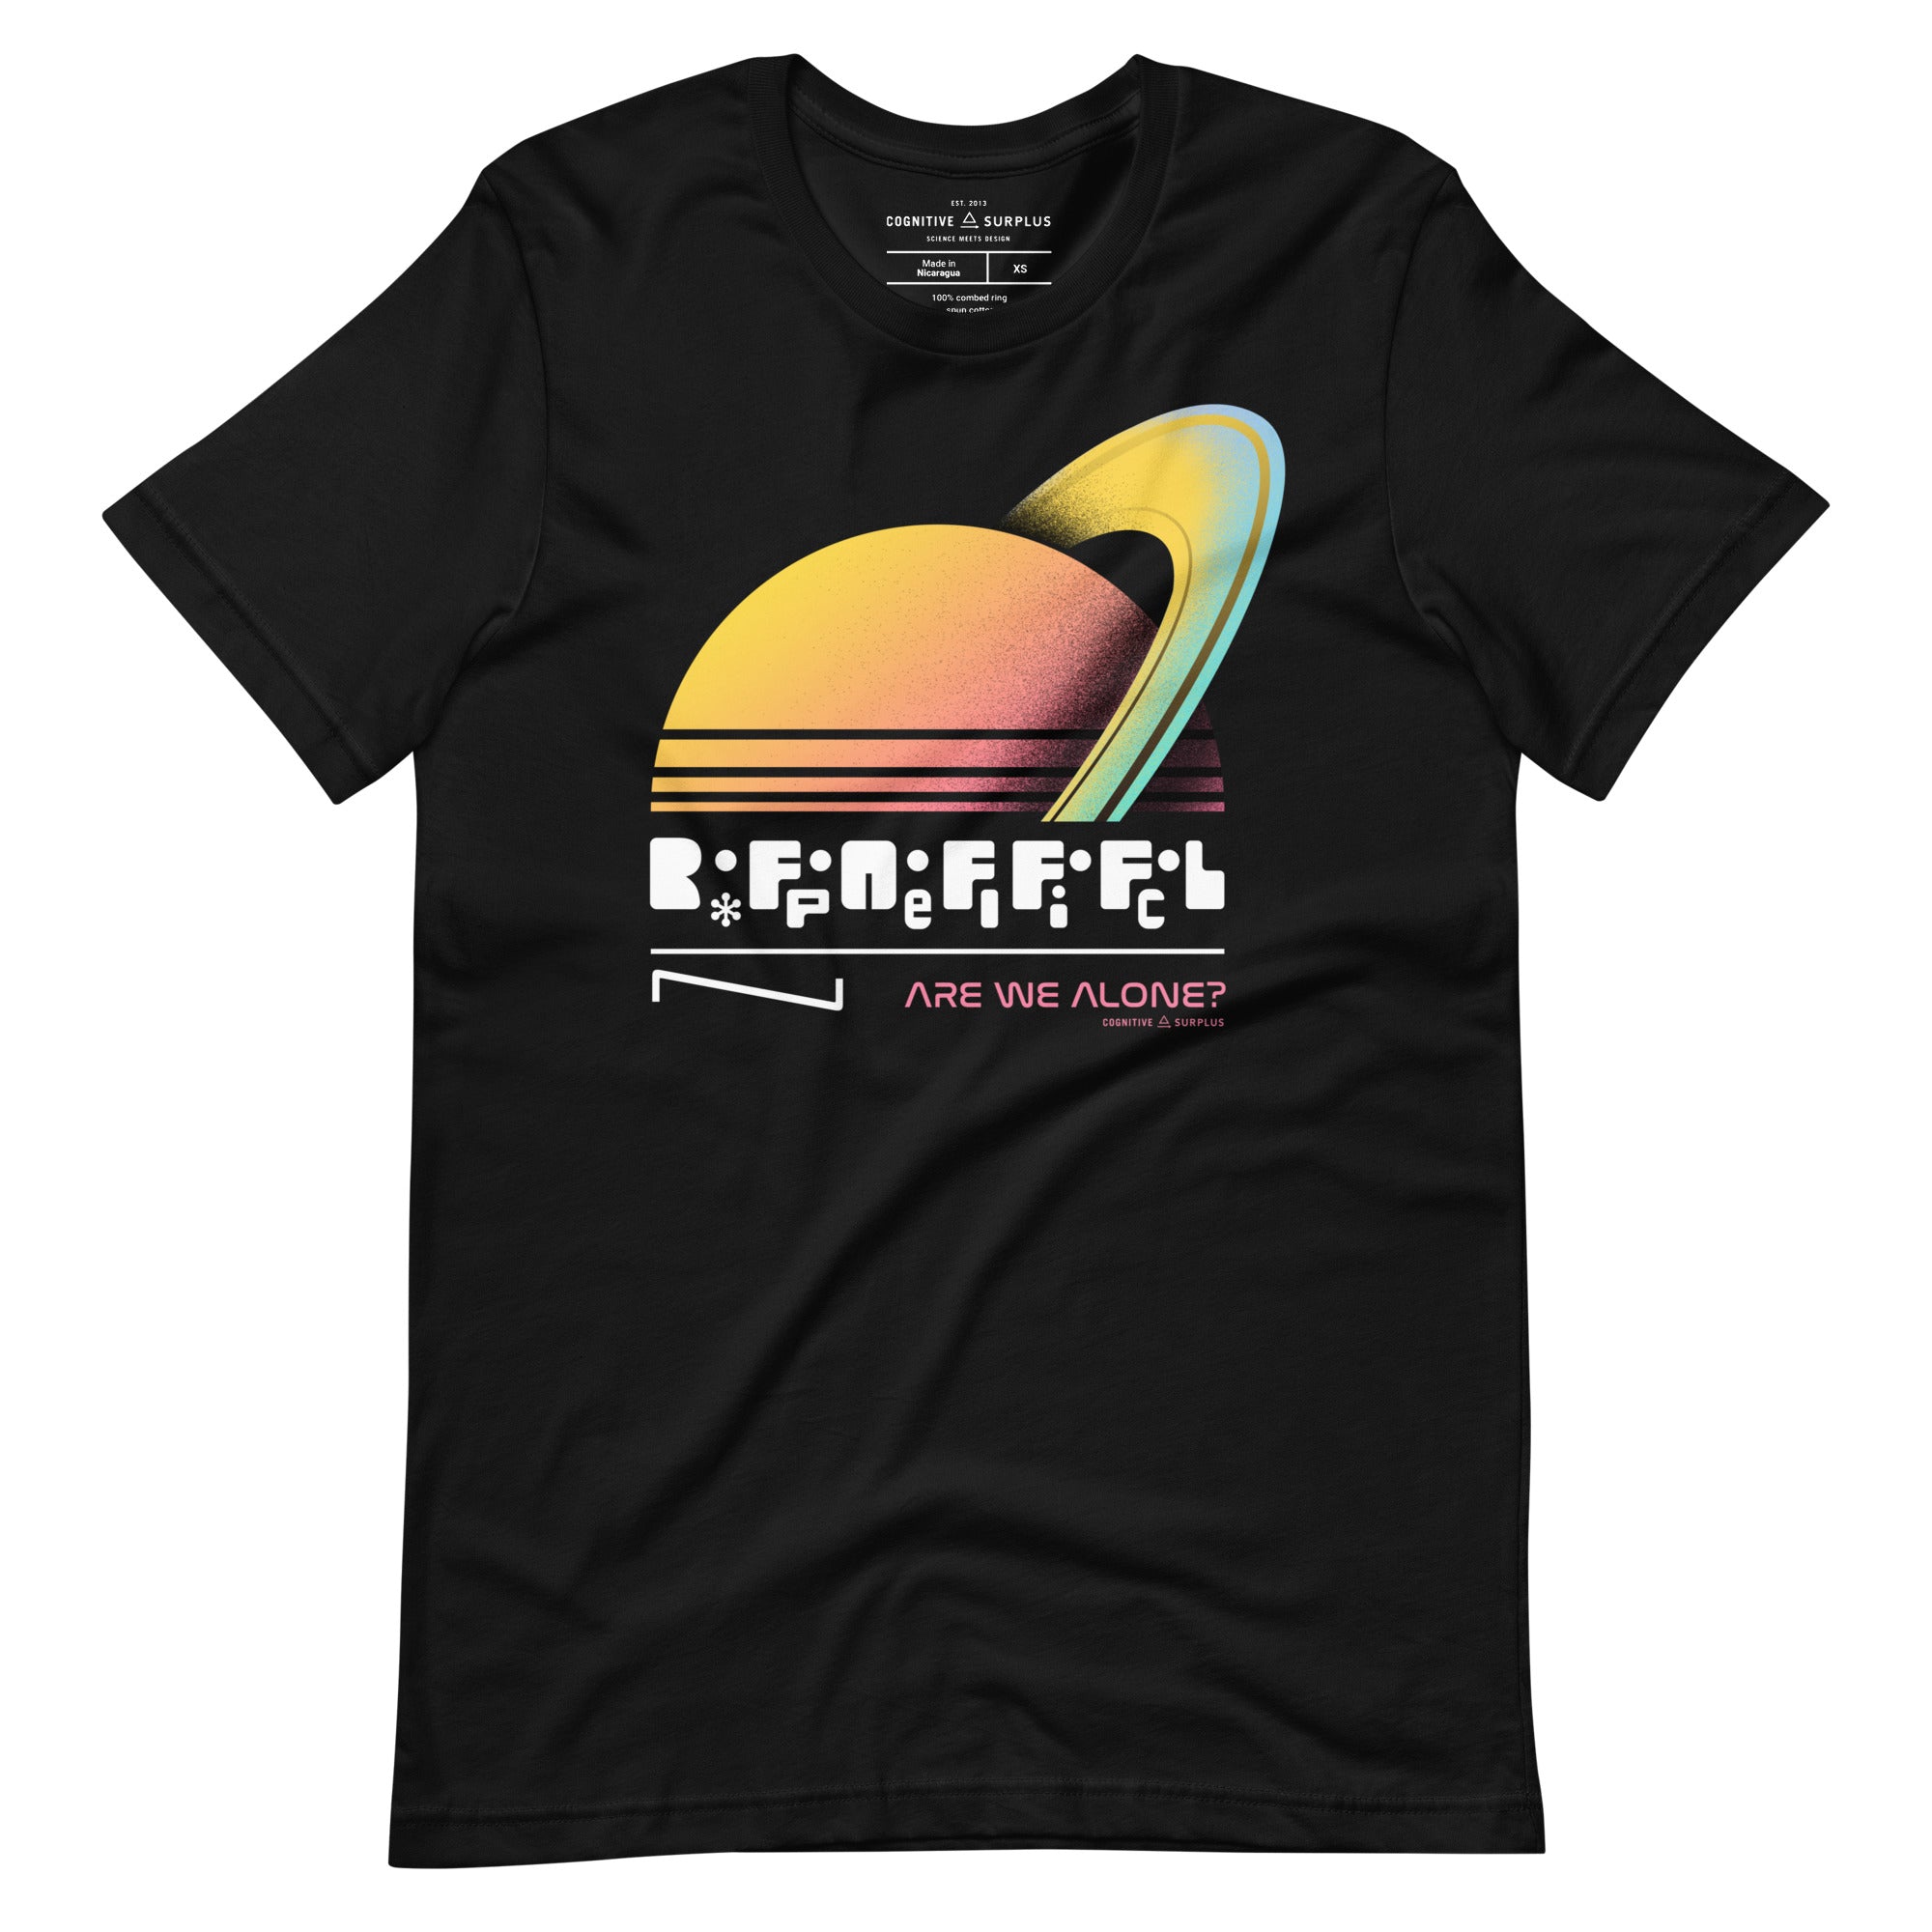 unisex-staple-t-shirt-black-front-654a6e3c41a2c.jpg